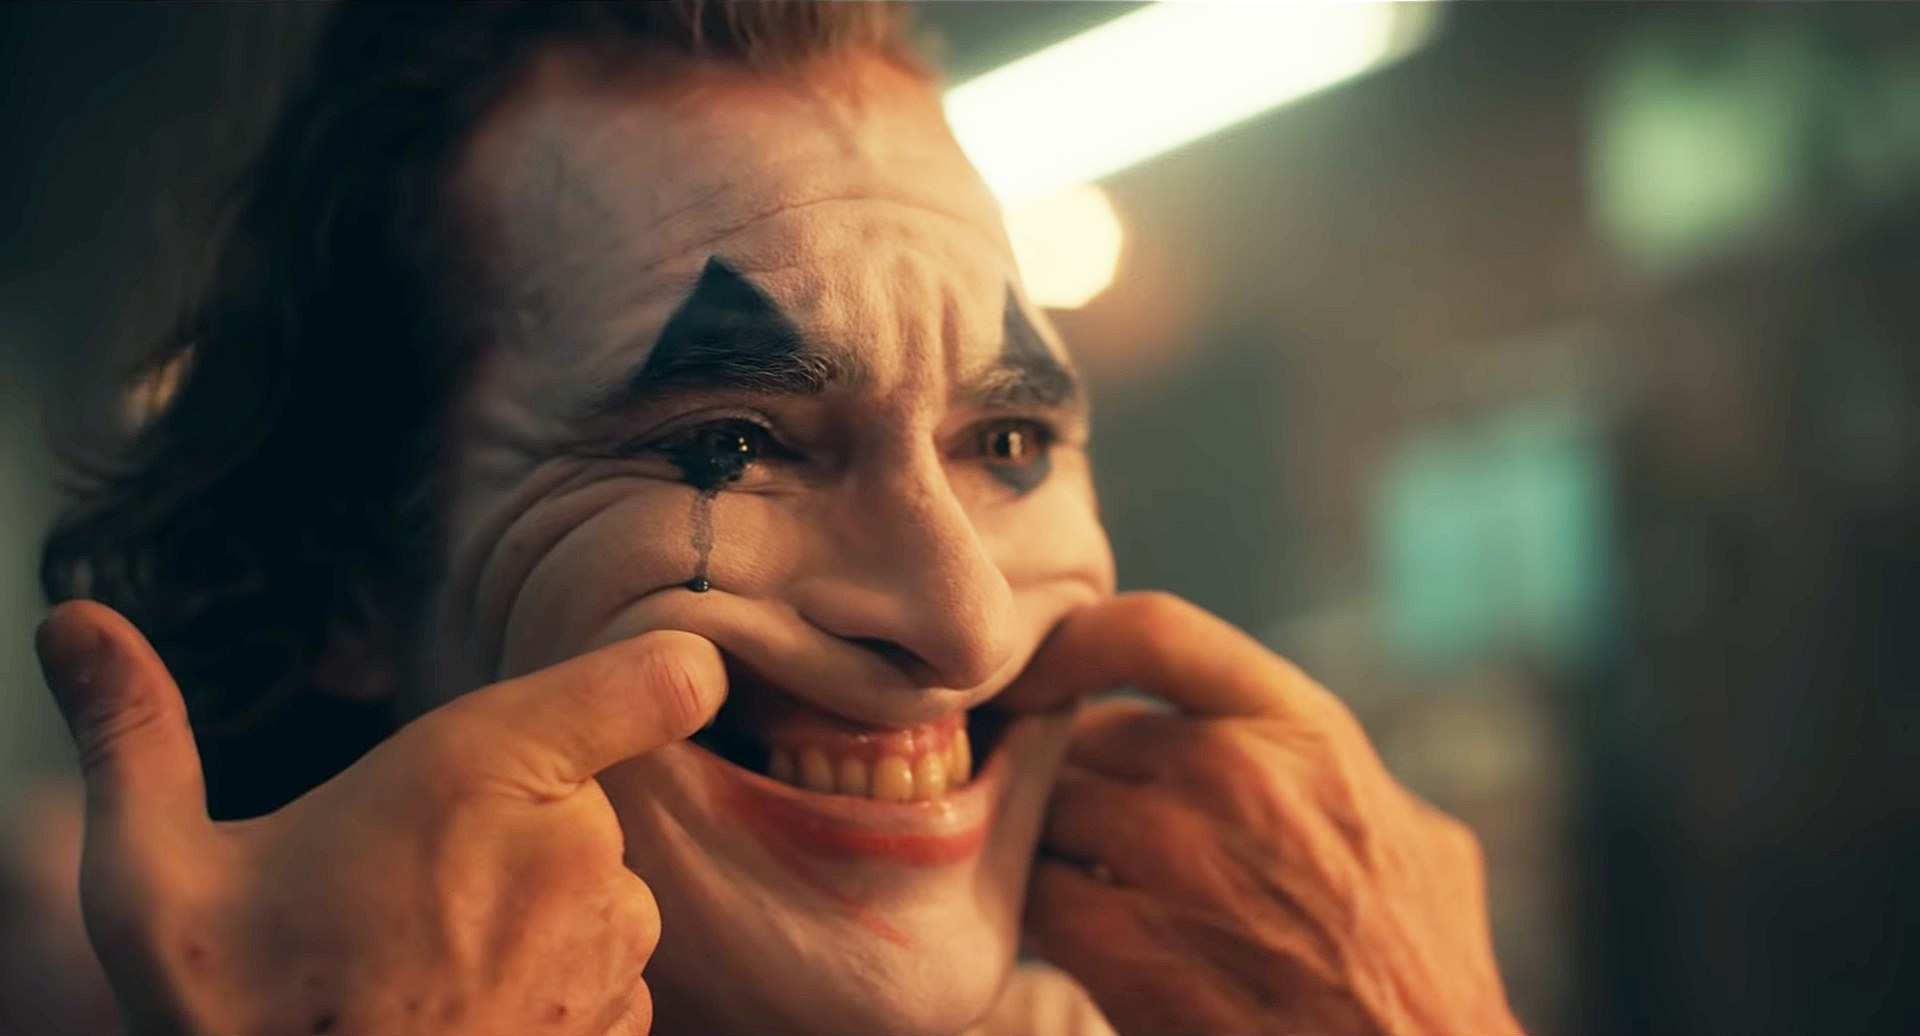 Joker forced smile Blank Meme Template